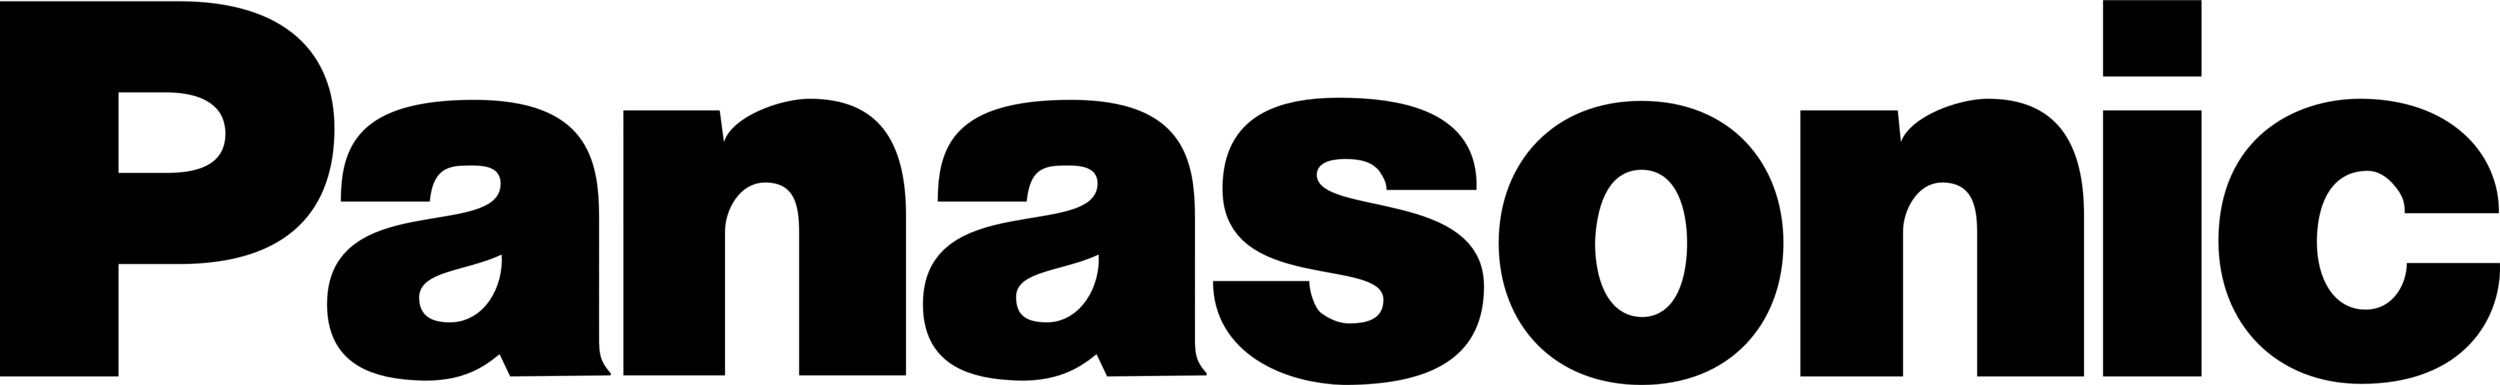 Panasonic company logo